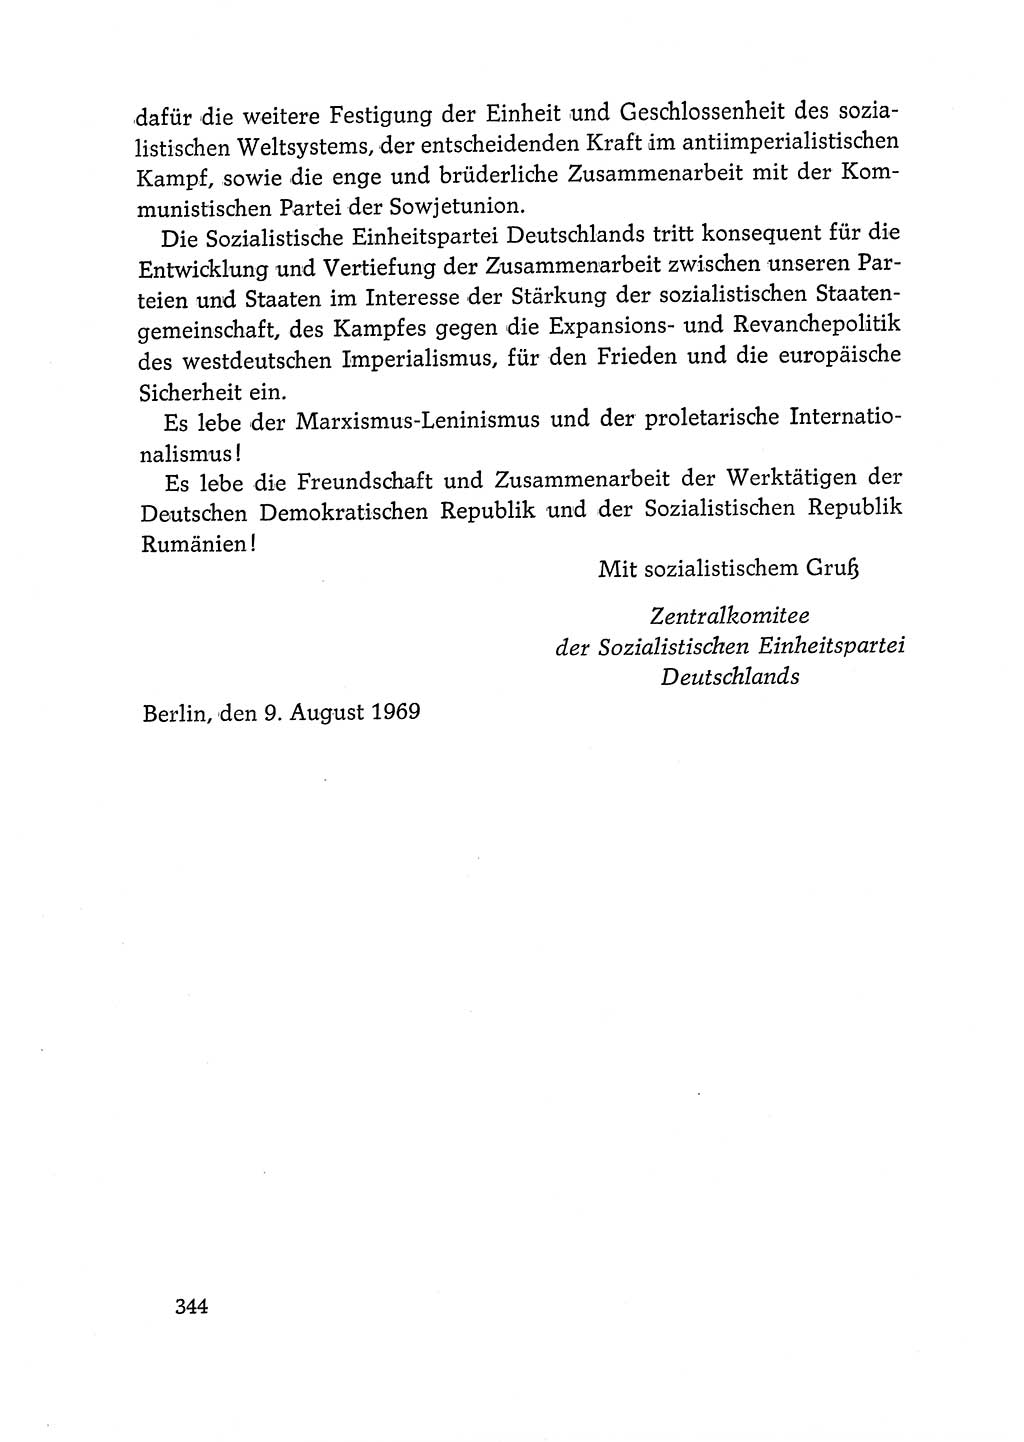 Dokumente der Sozialistischen Einheitspartei Deutschlands (SED) [Deutsche Demokratische Republik (DDR)] 1968-1969, Seite 344 (Dok. SED DDR 1968-1969, S. 344)